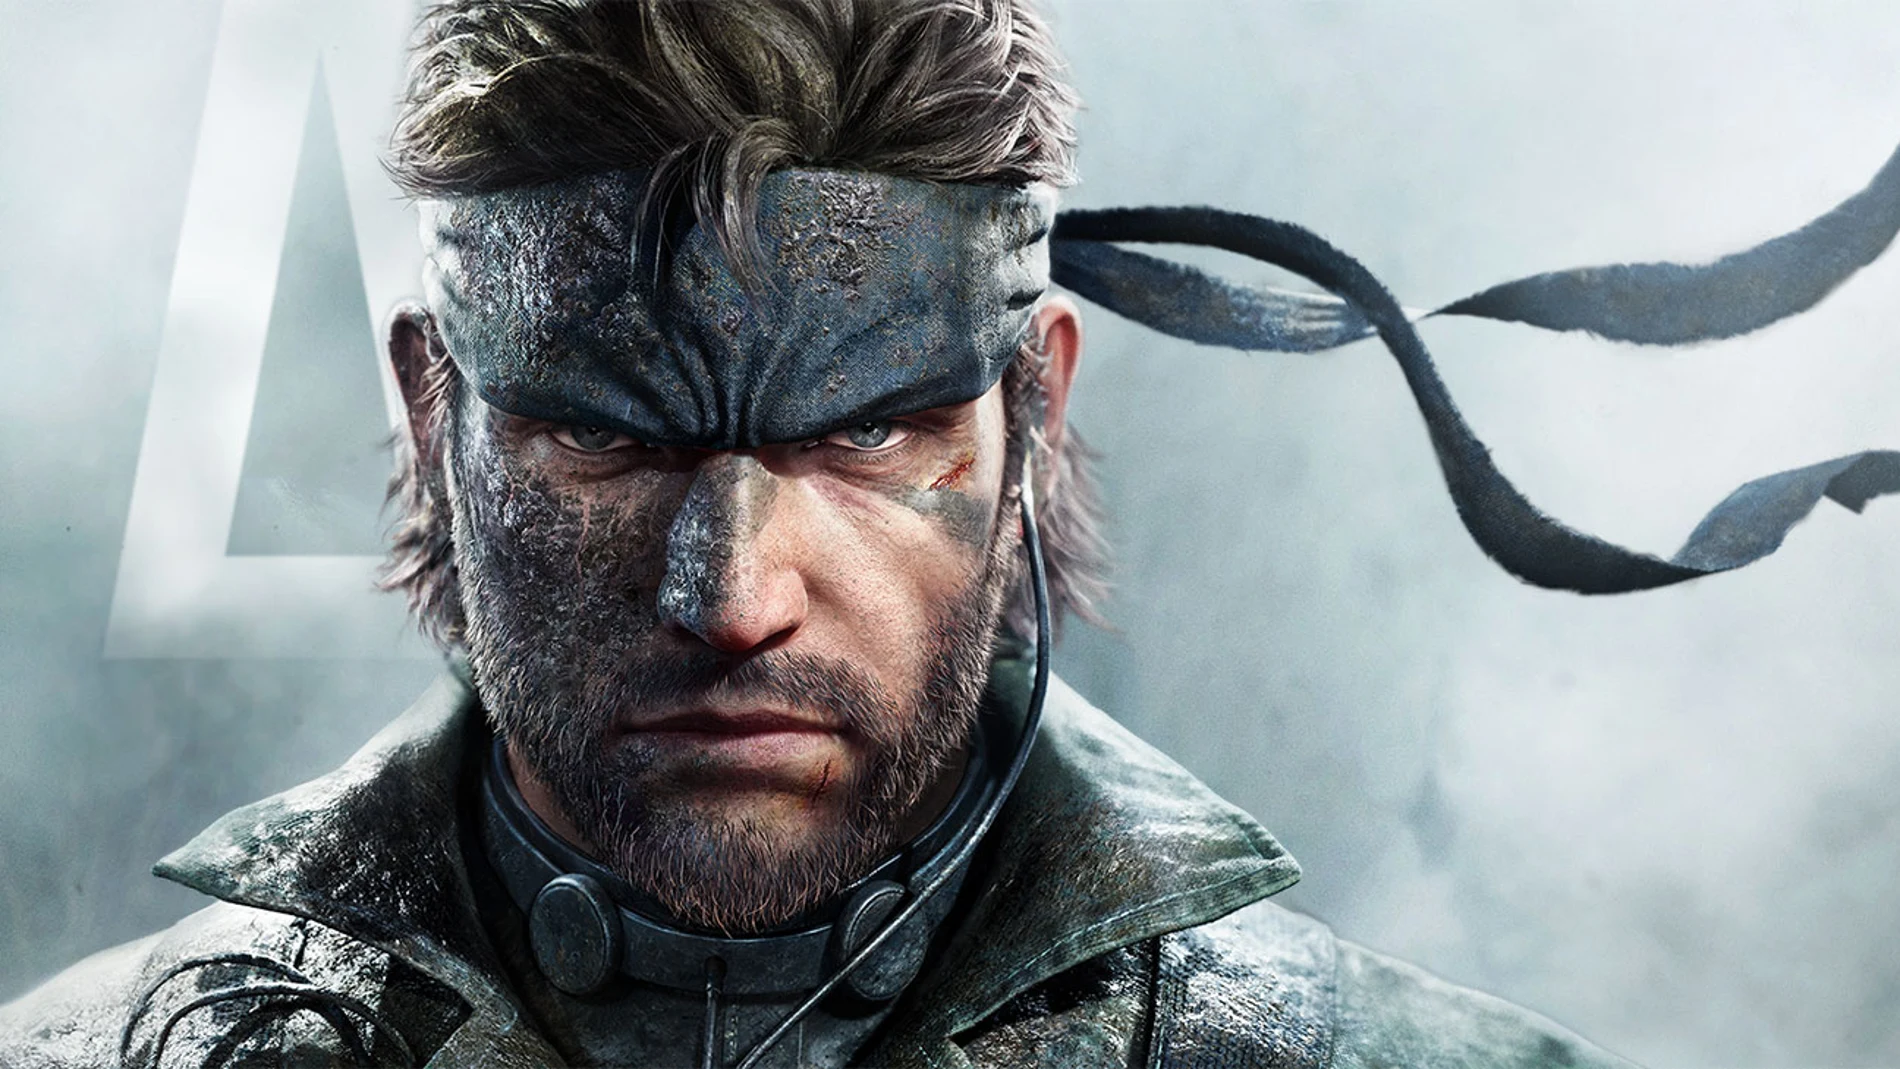 Metal Gear Solid Delta: Snake Eater se muestra impresionante con tecnología Unreal 5.